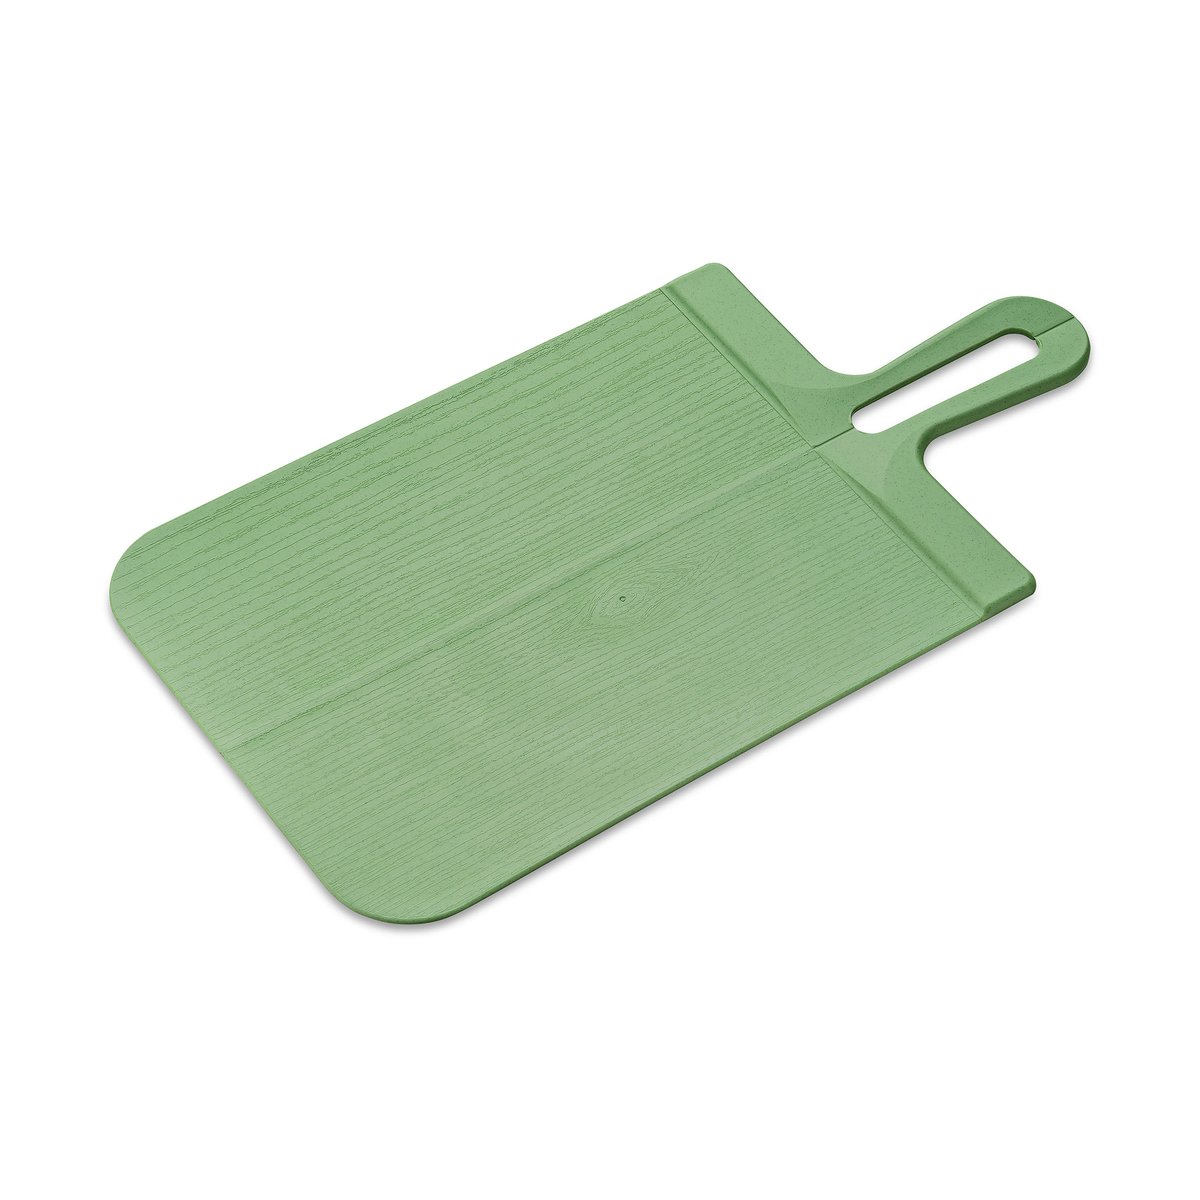 koziol planche à découper pliante snap l 24,2x46,4 cm nature leaf green